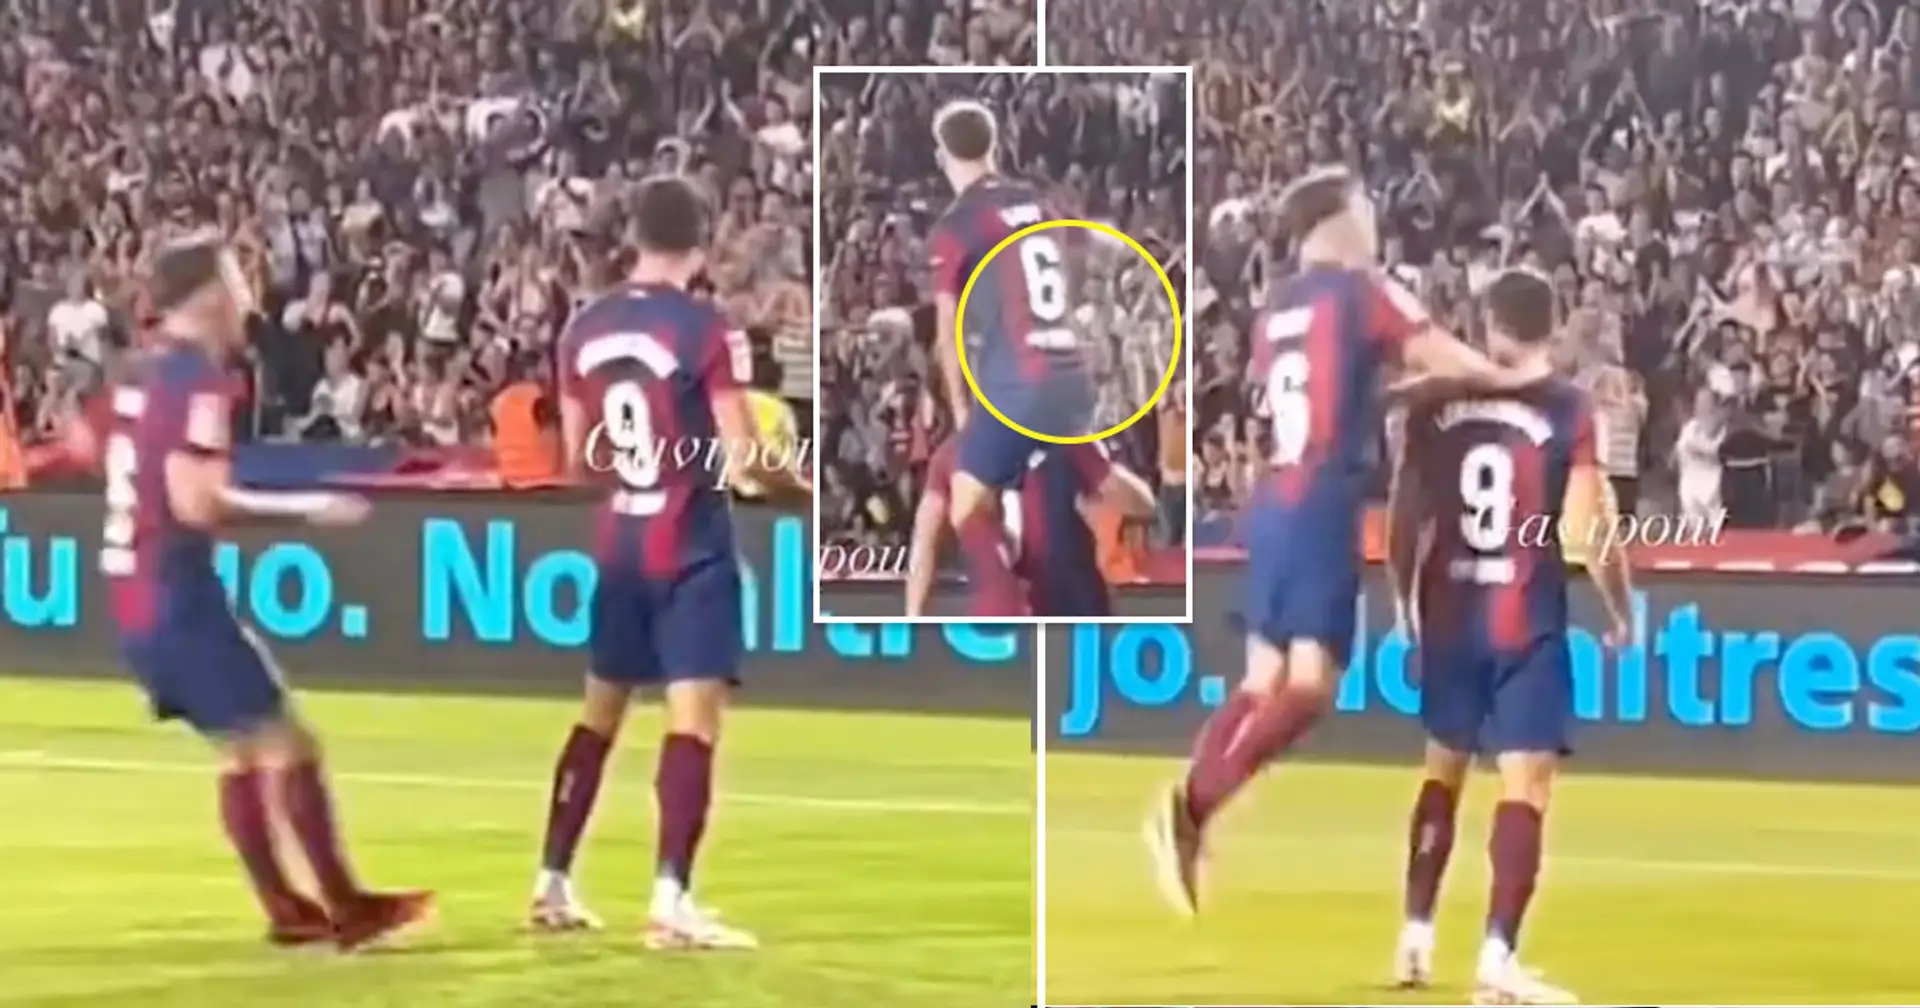 La divertida celebración del gol de Gavi contra el Real Betis captada por la cámara: ¿cómo lo hizo?